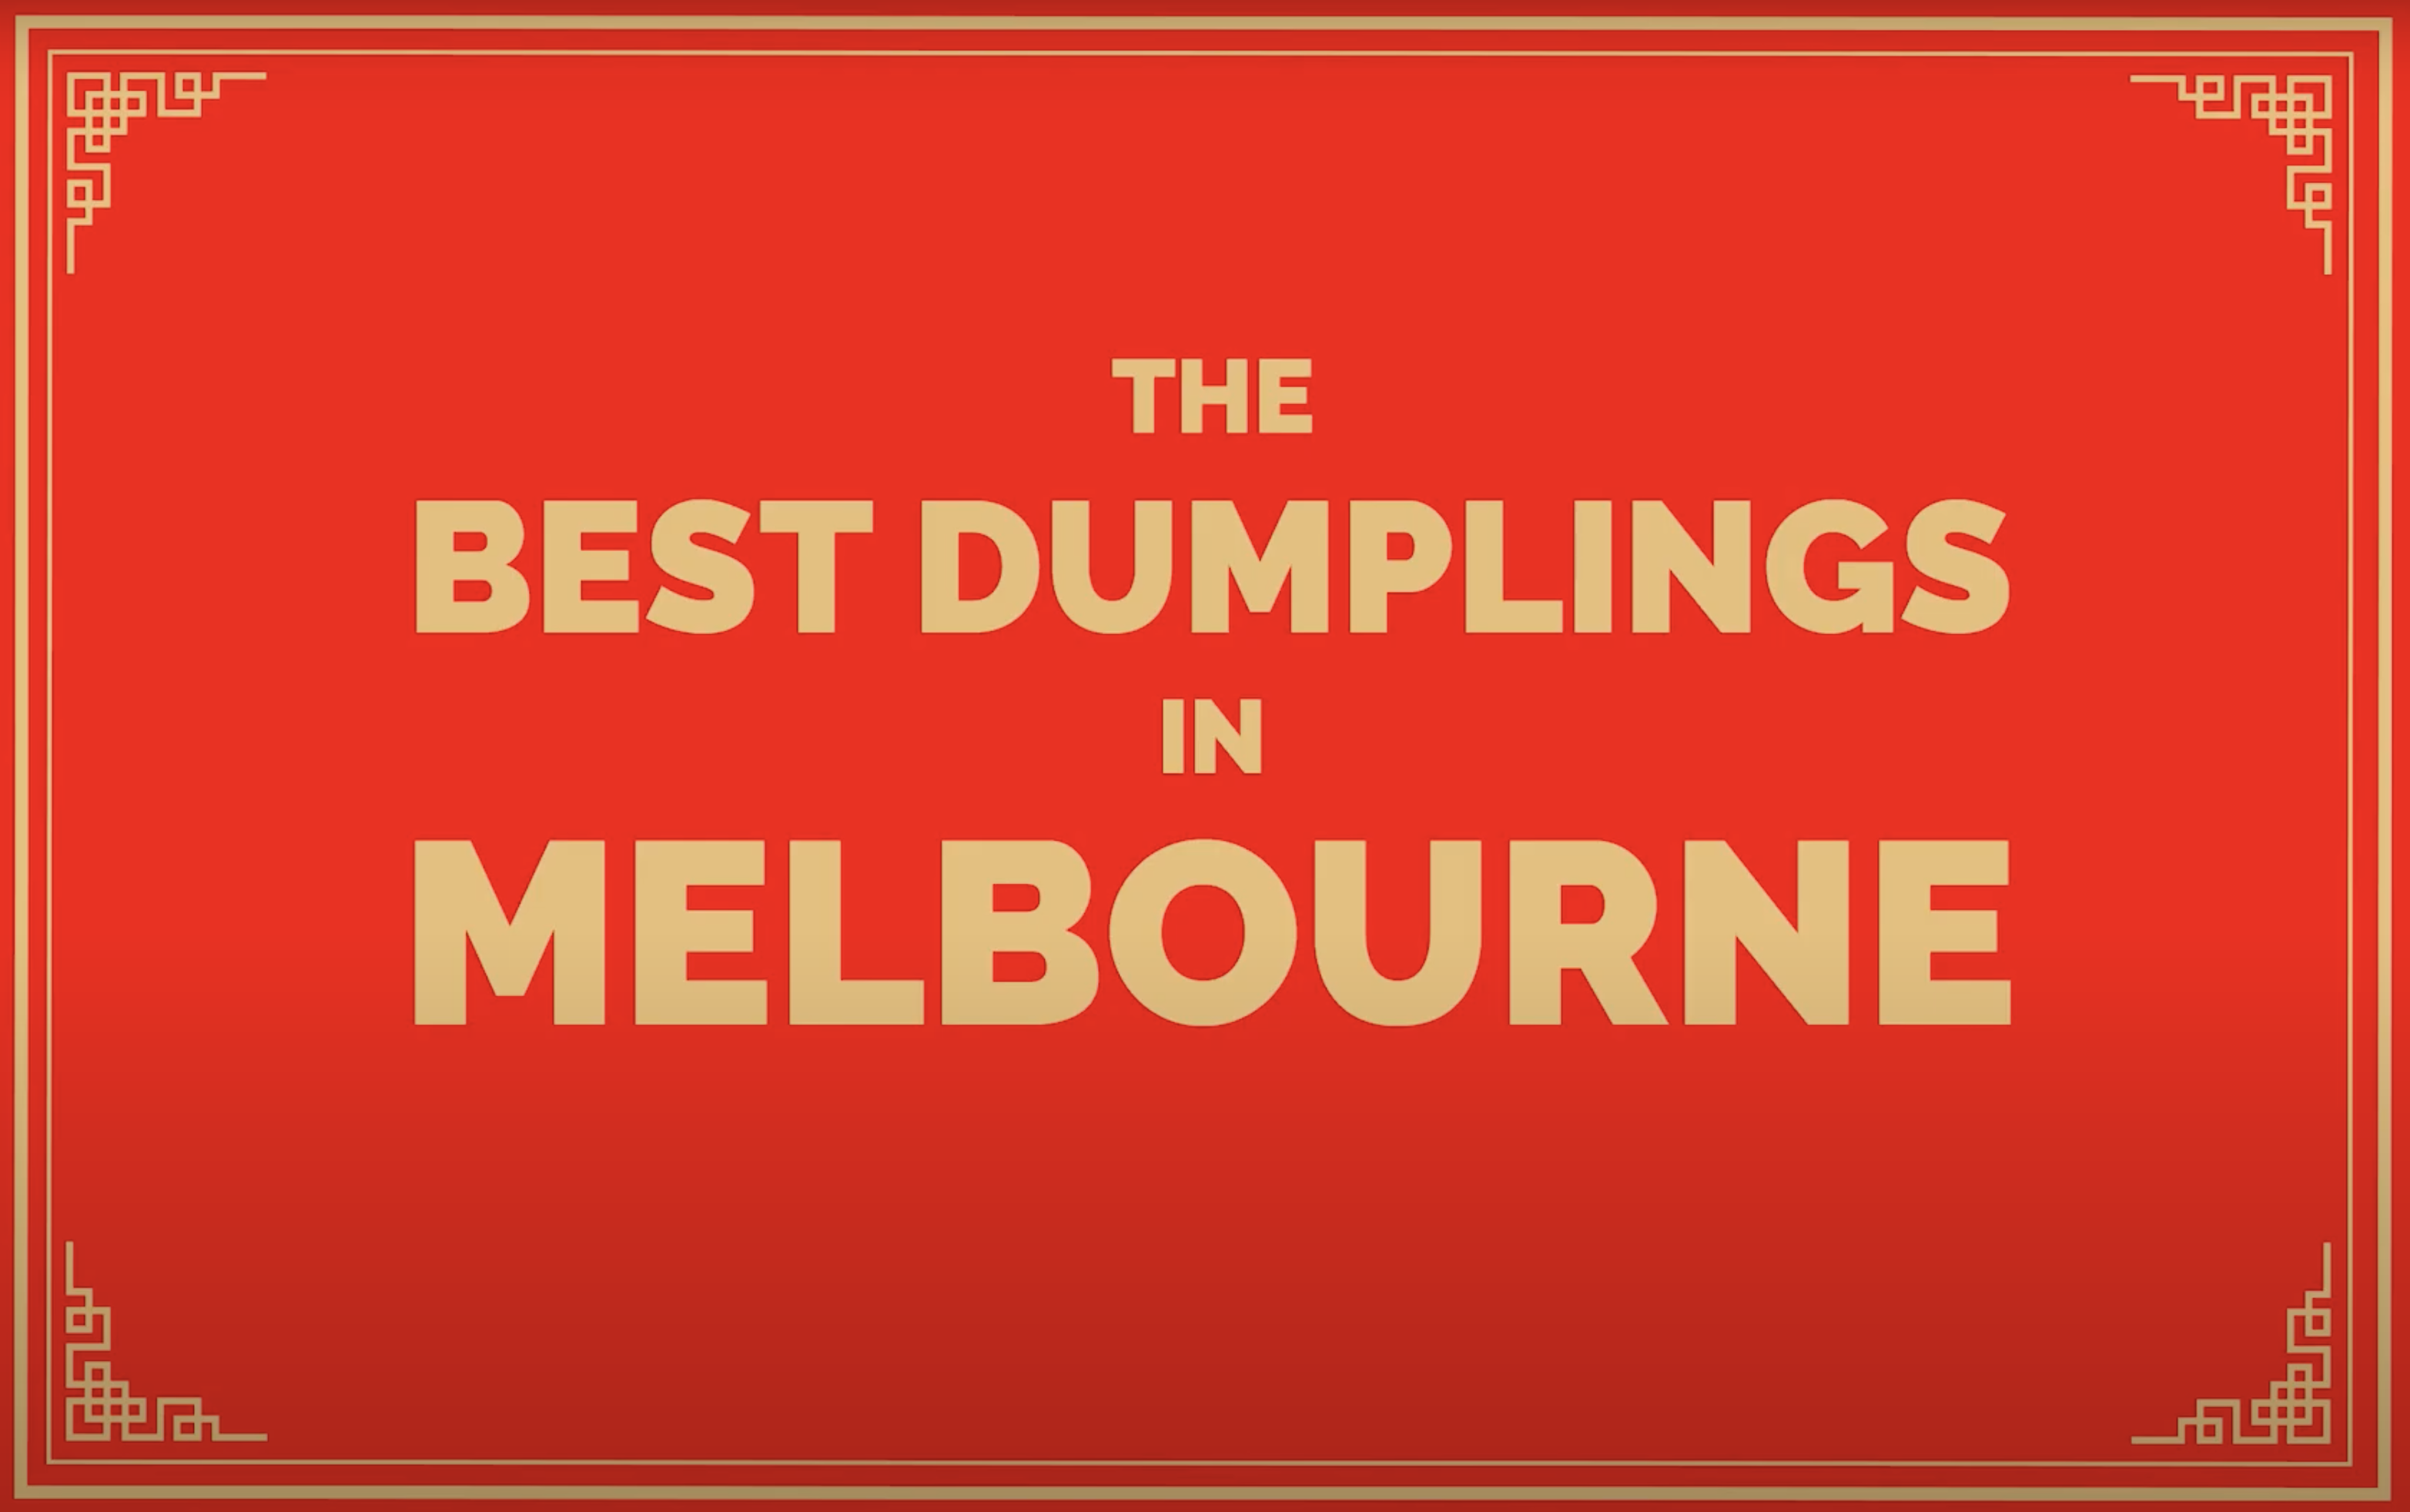 The Best Dumplings in Melbourne